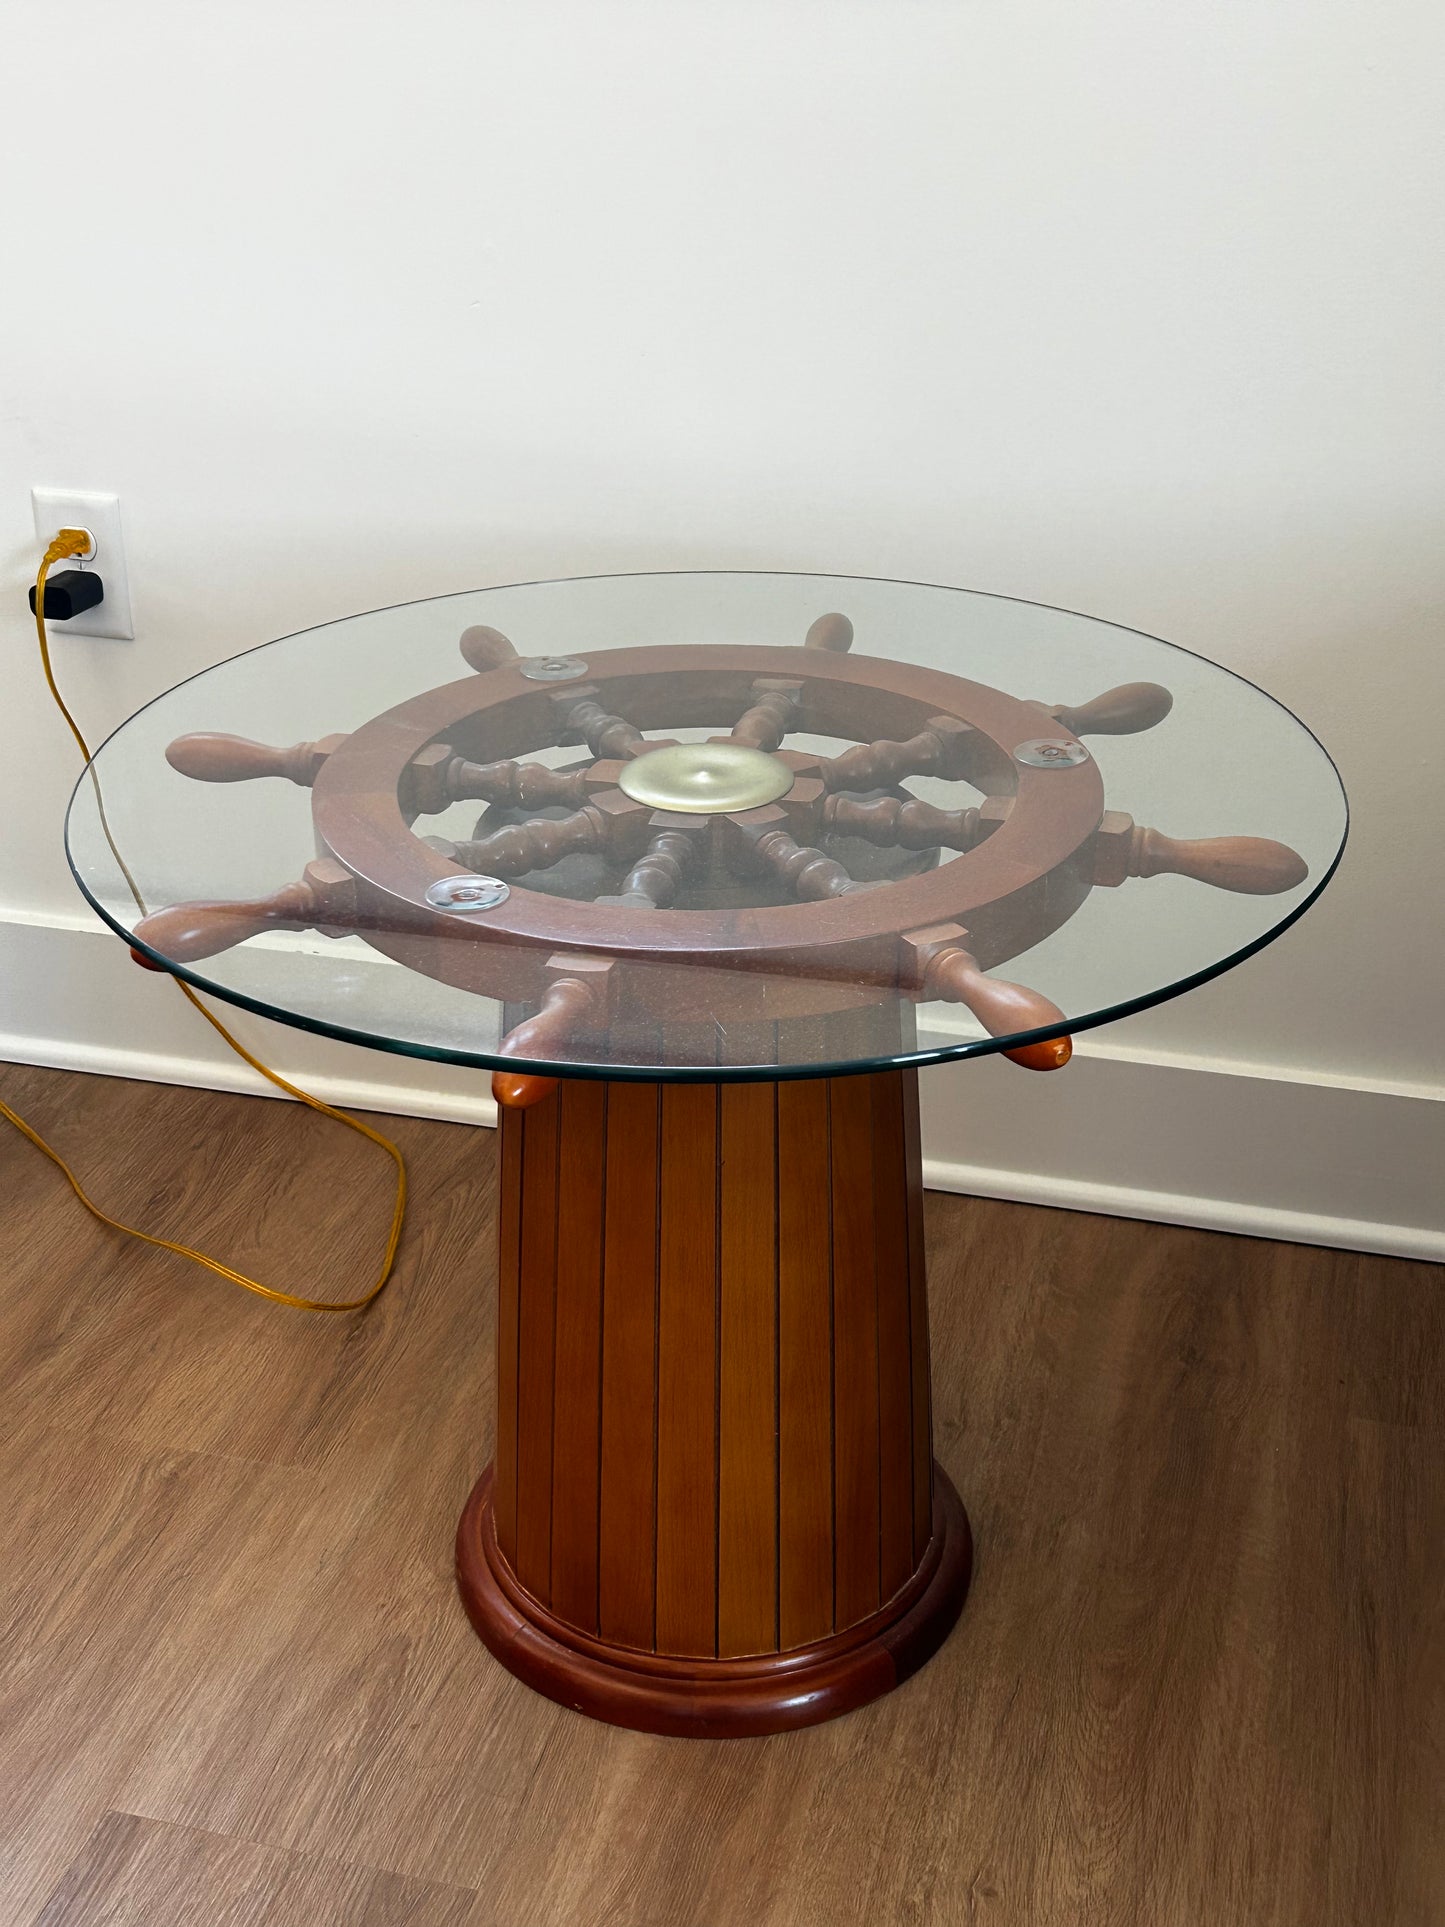 Ship's Wheel Table